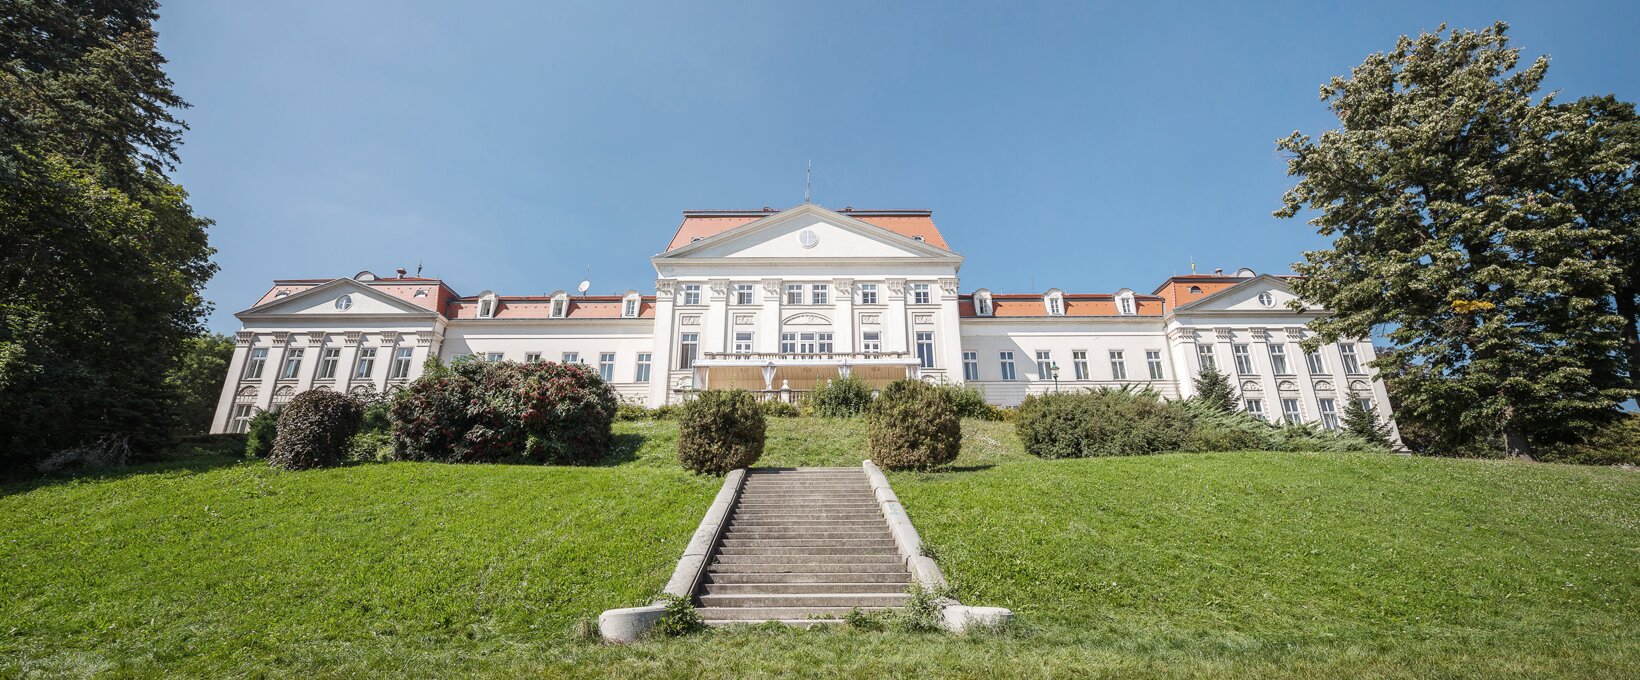 Außenansicht mit Stiegenaufgang | Hotel Schloss Wilhelminenberg in Wien